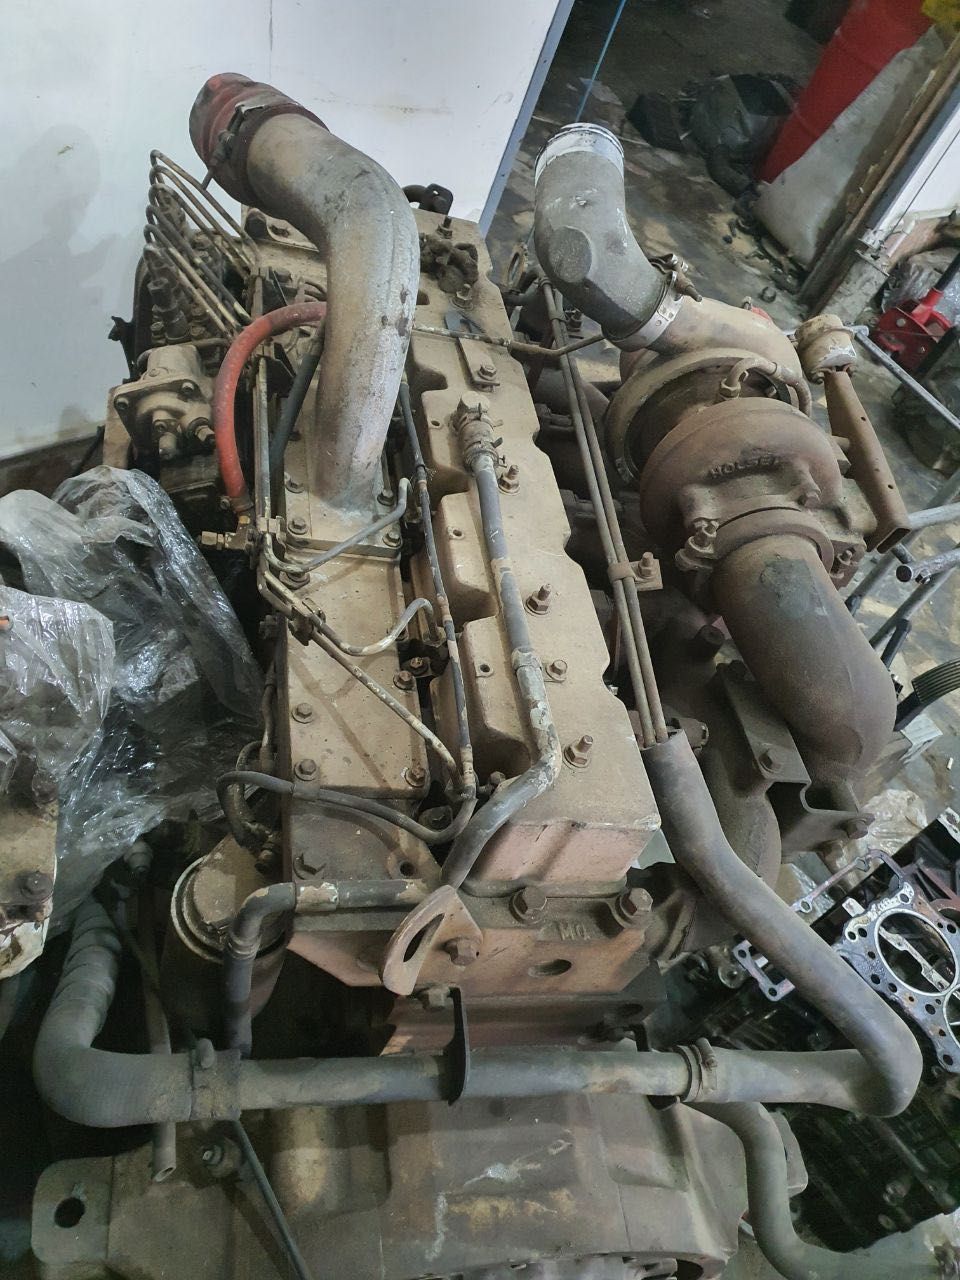 Мотор двигатель Кейс Магнум Case Magnum 255 240 Cummins 8.3